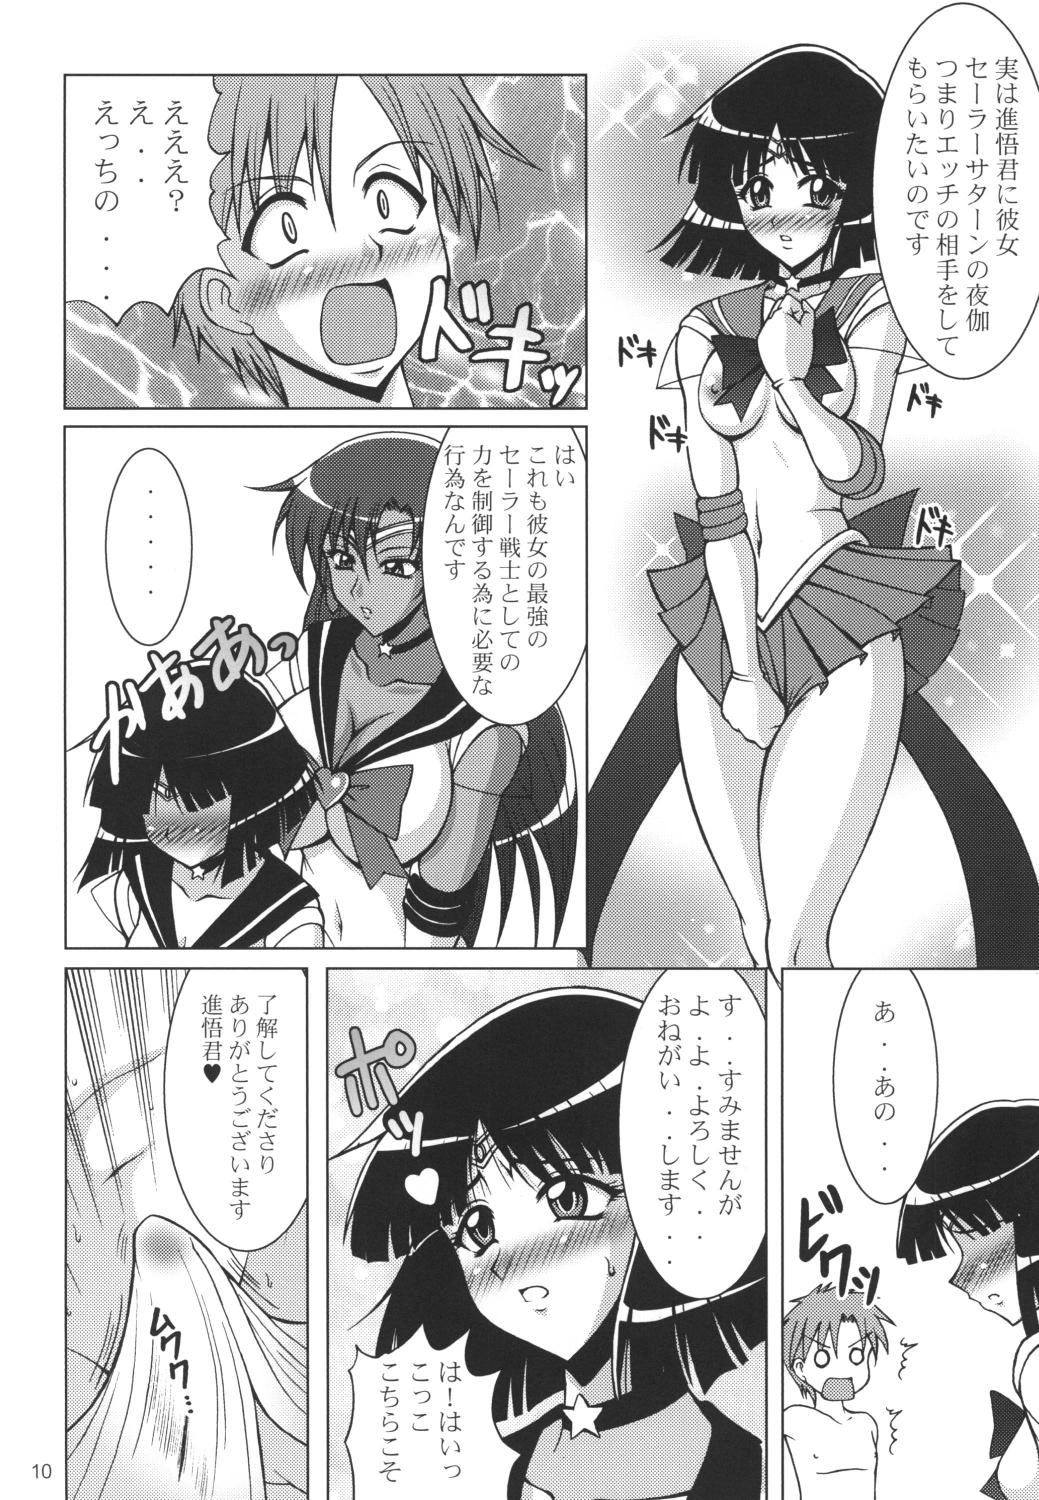 Casado Rojou no Meiousei - Sailor moon Sister - Page 9